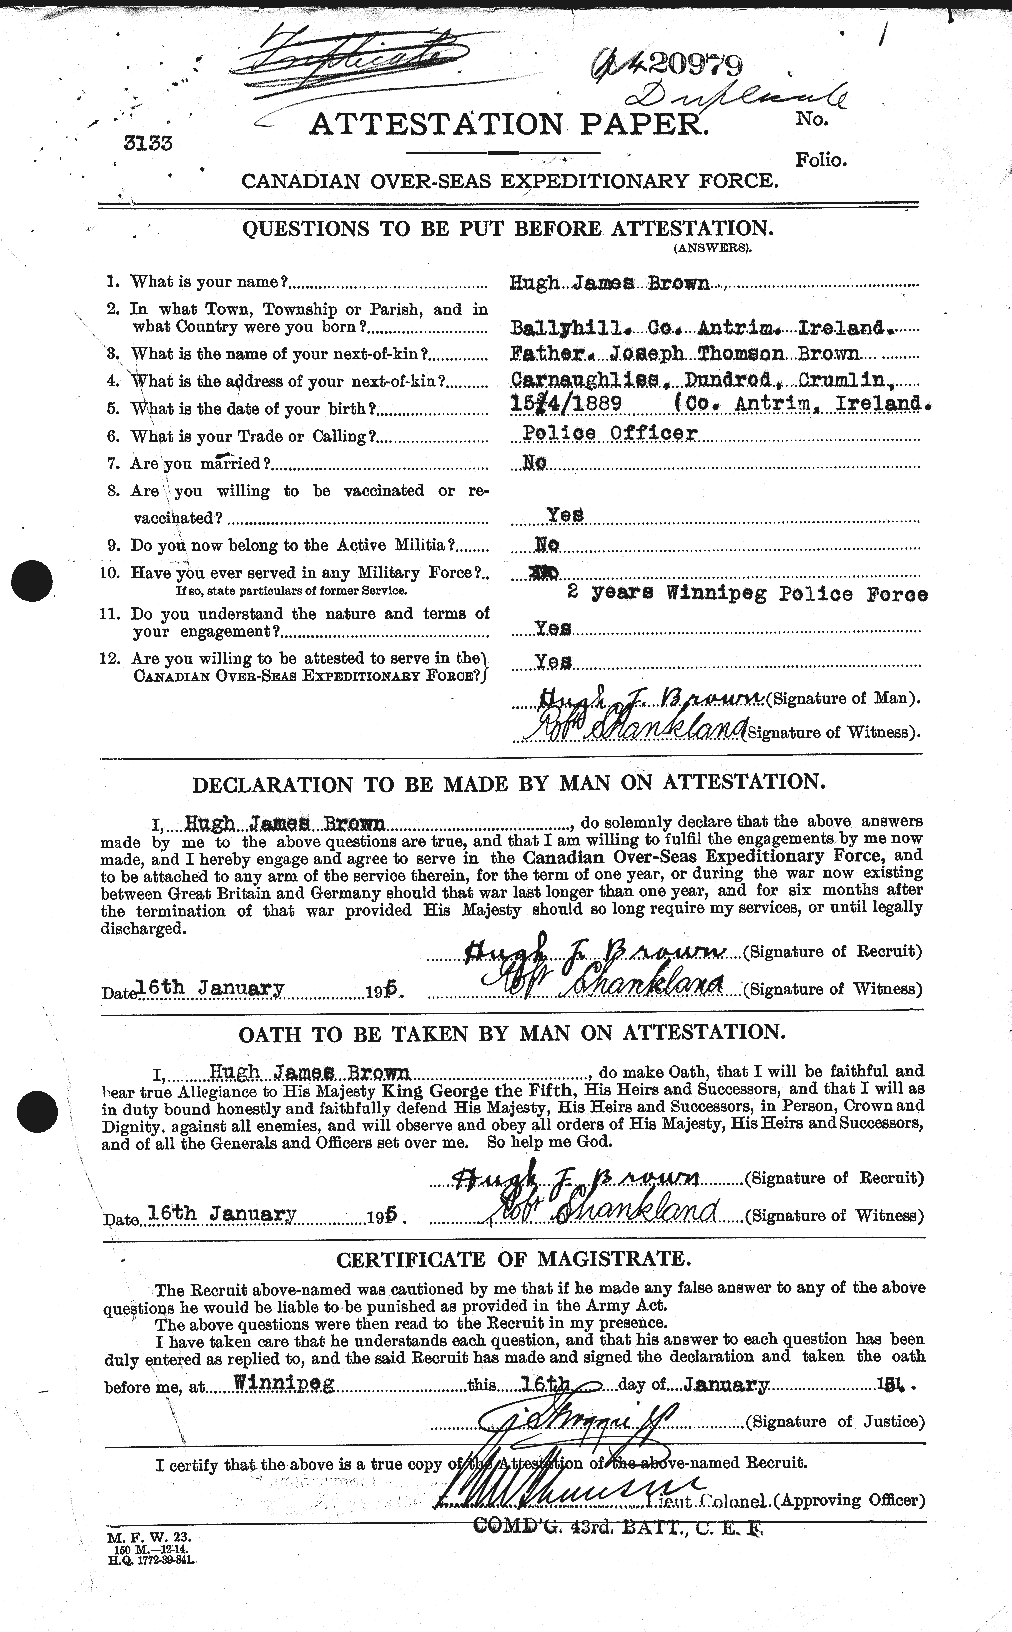 Dossiers du Personnel de la Première Guerre mondiale - CEC 265651a